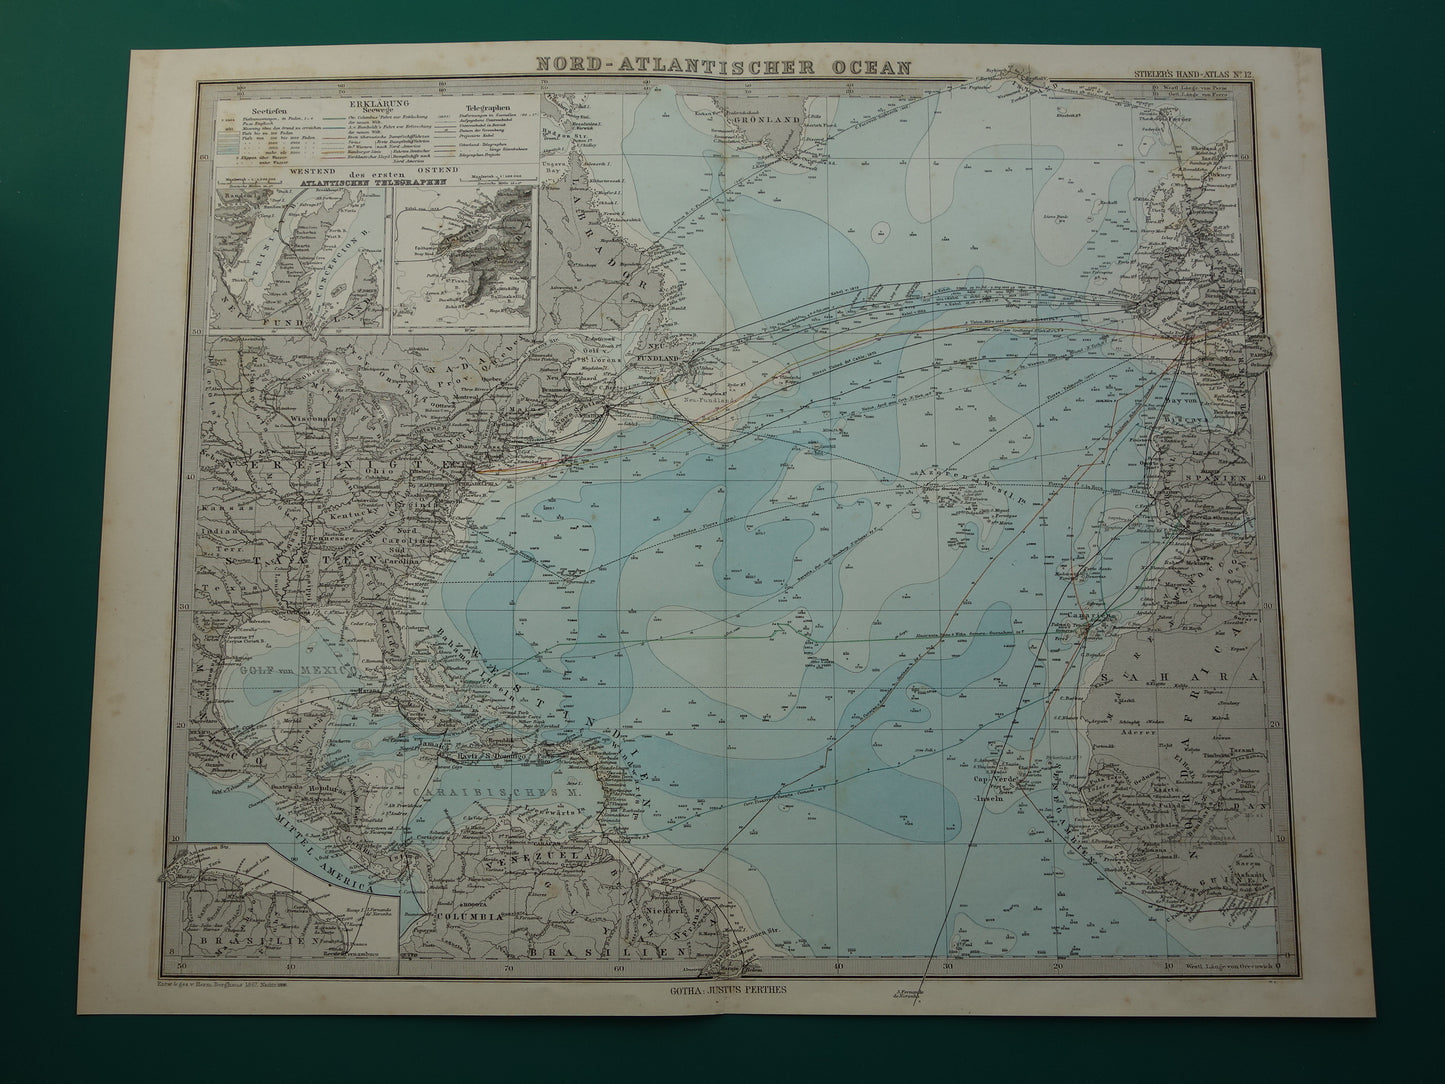 ATLANTISCHE OCEAAN oude kaart van het Noord-Atlantische Oceaan 1886 originele antieke landkaart vintage poster scheepvaart zeekaart